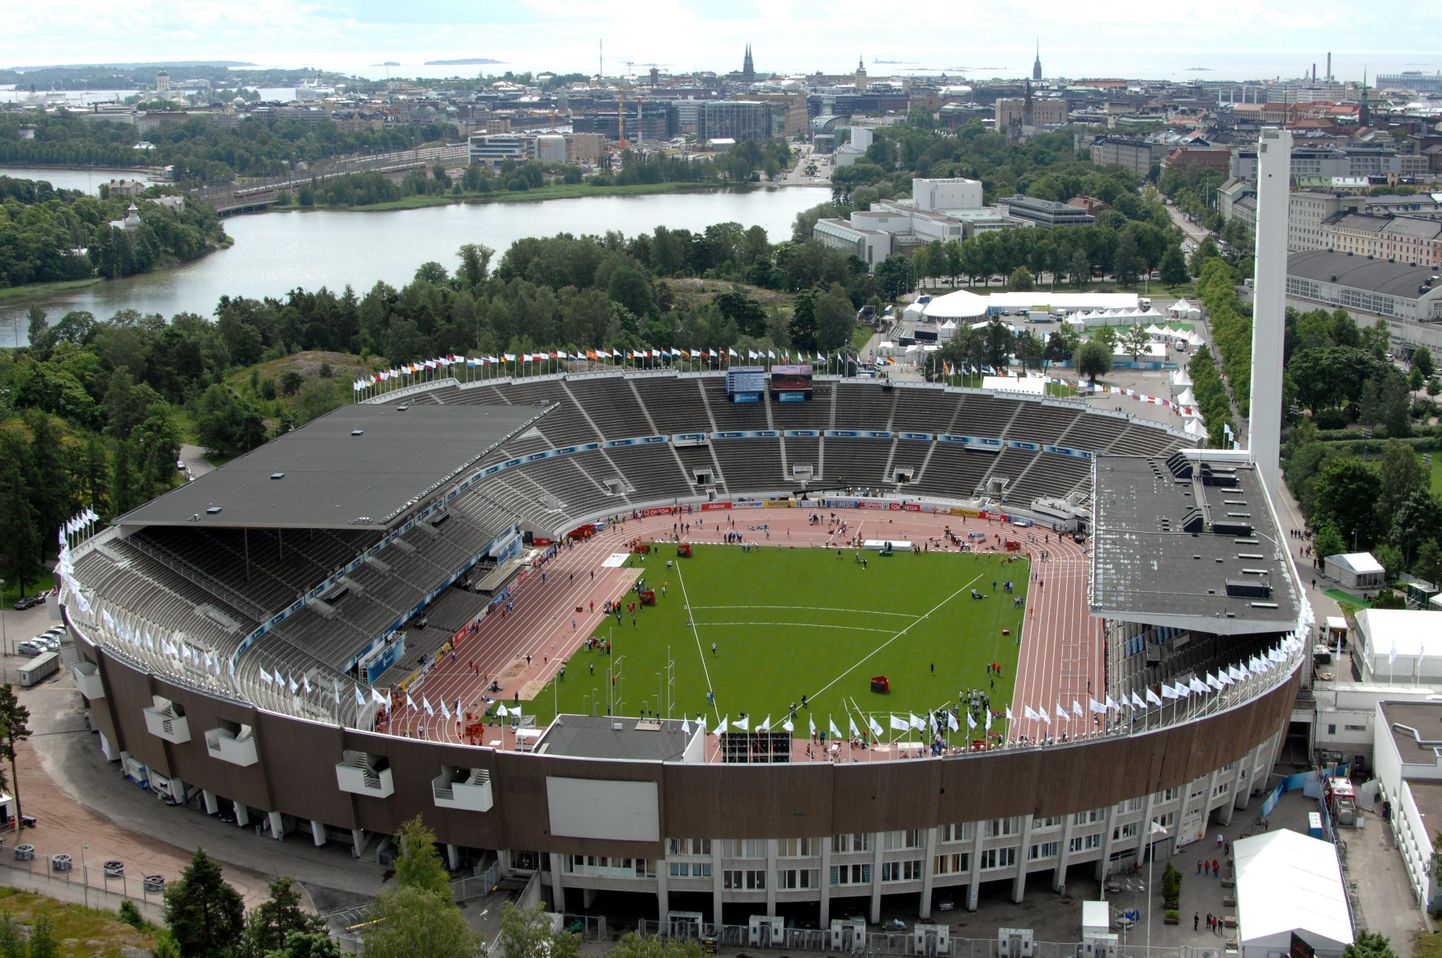 Olümpiastaadion on Helsingis näinud korduvalt rahvusvahelisi suurvõistlusi ja leidnud püsiva koha soomlaste südames.